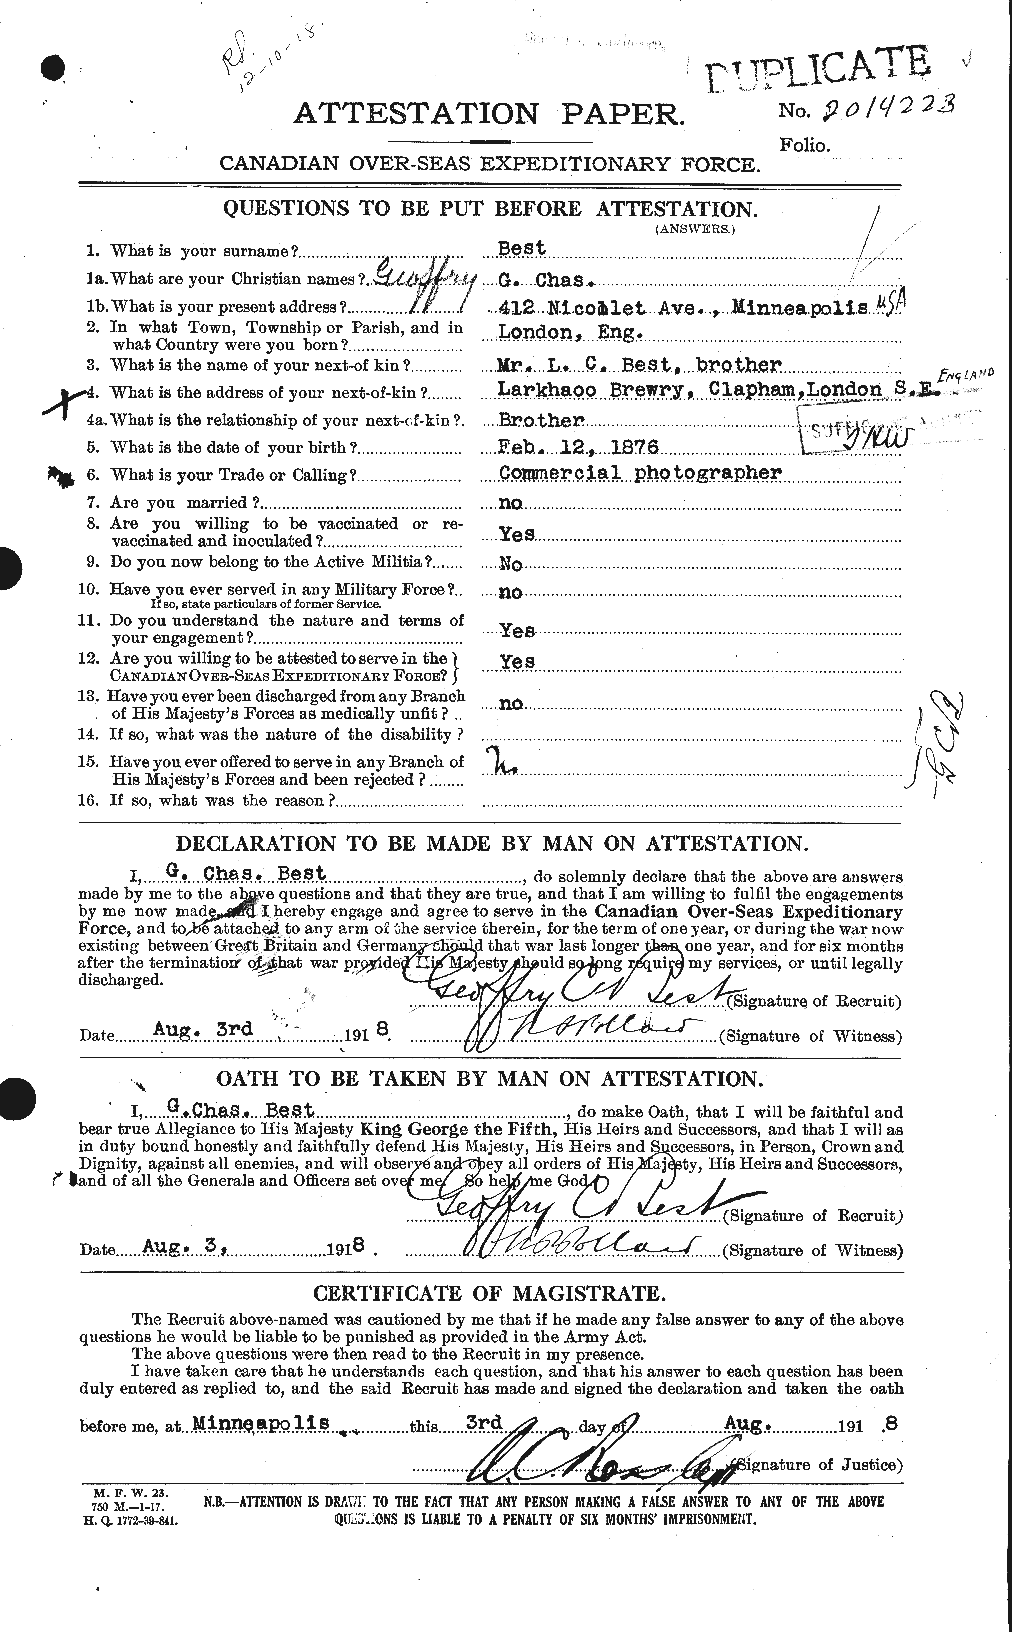 Dossiers du Personnel de la Première Guerre mondiale - CEC 240256a